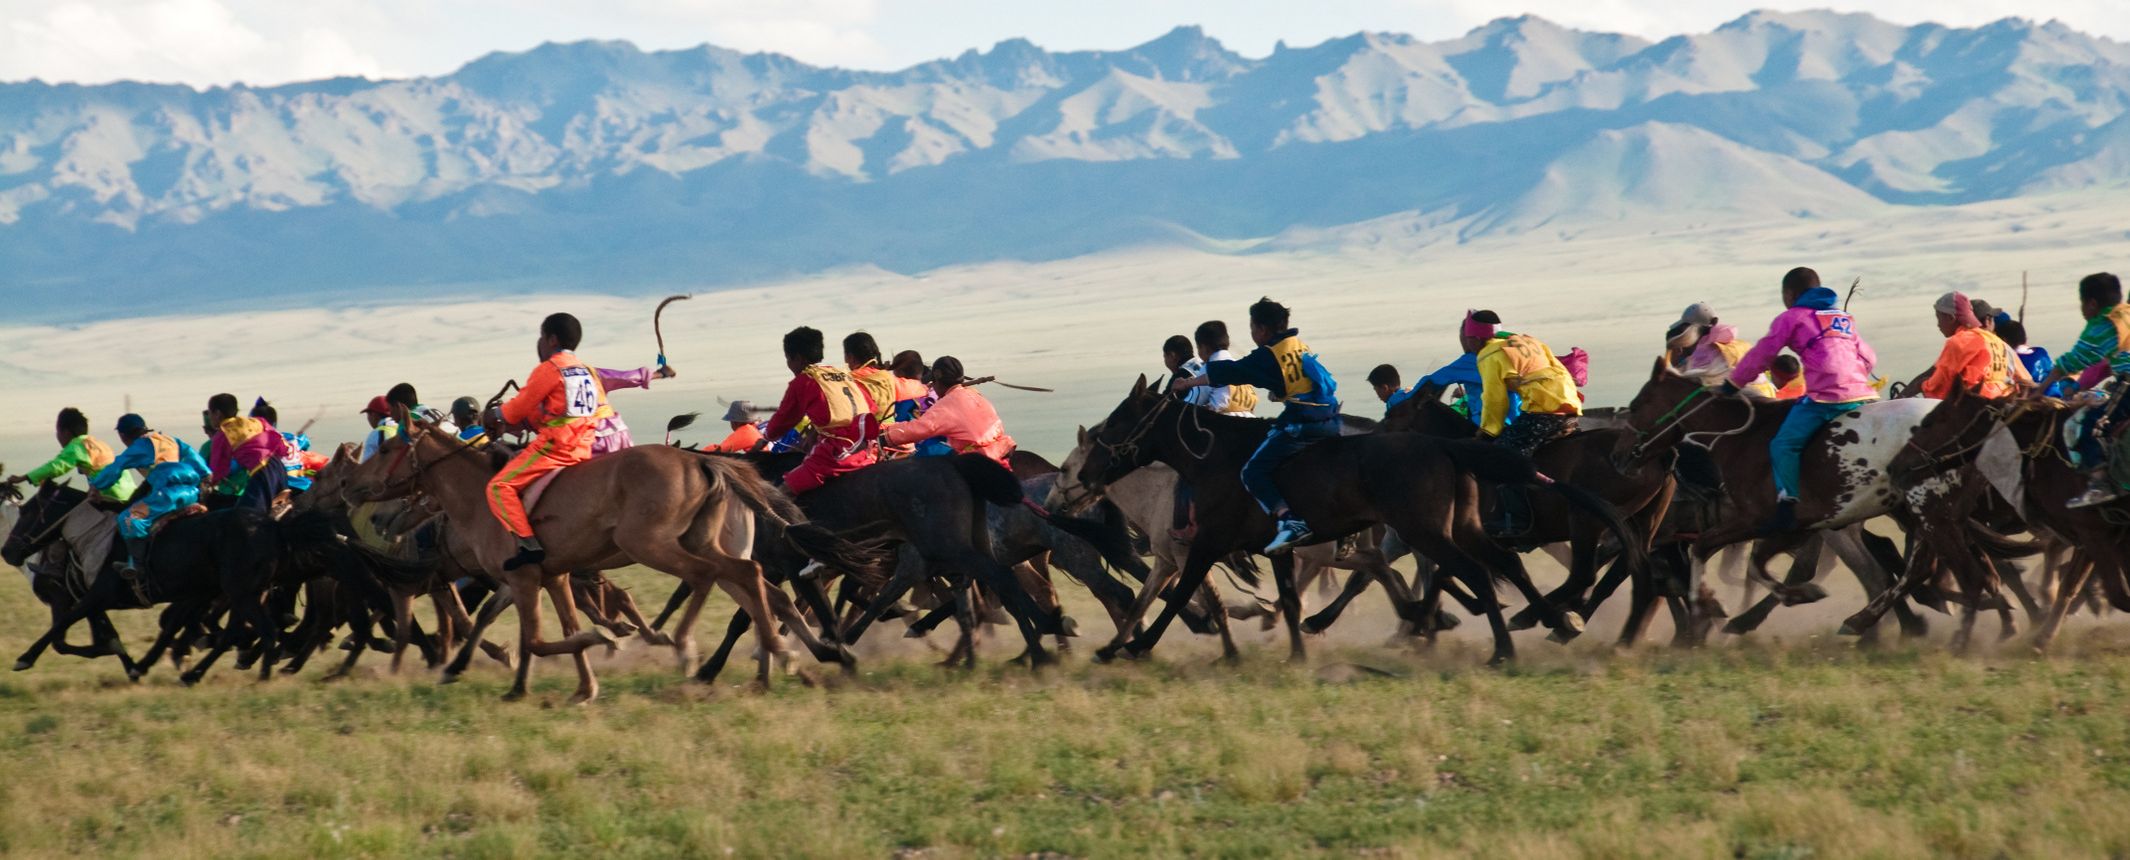 Los Mongoles y sus costumbres | Autor José Urbina